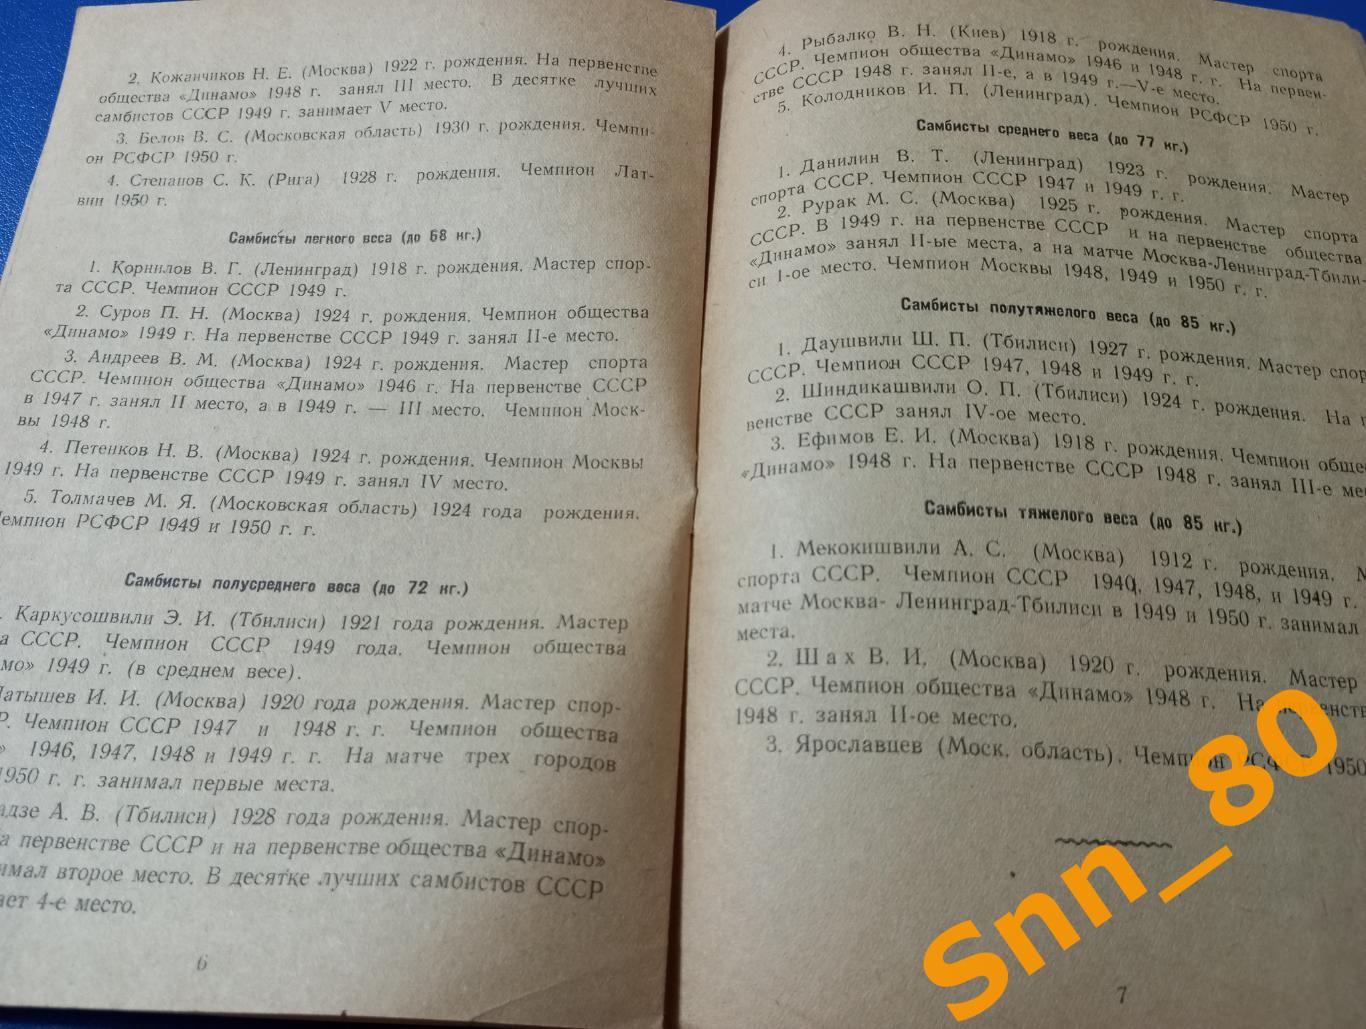 Борьба самбо 6-е Всесоюзное лично-командное первенство обществ Динамо 1950 Минск 4